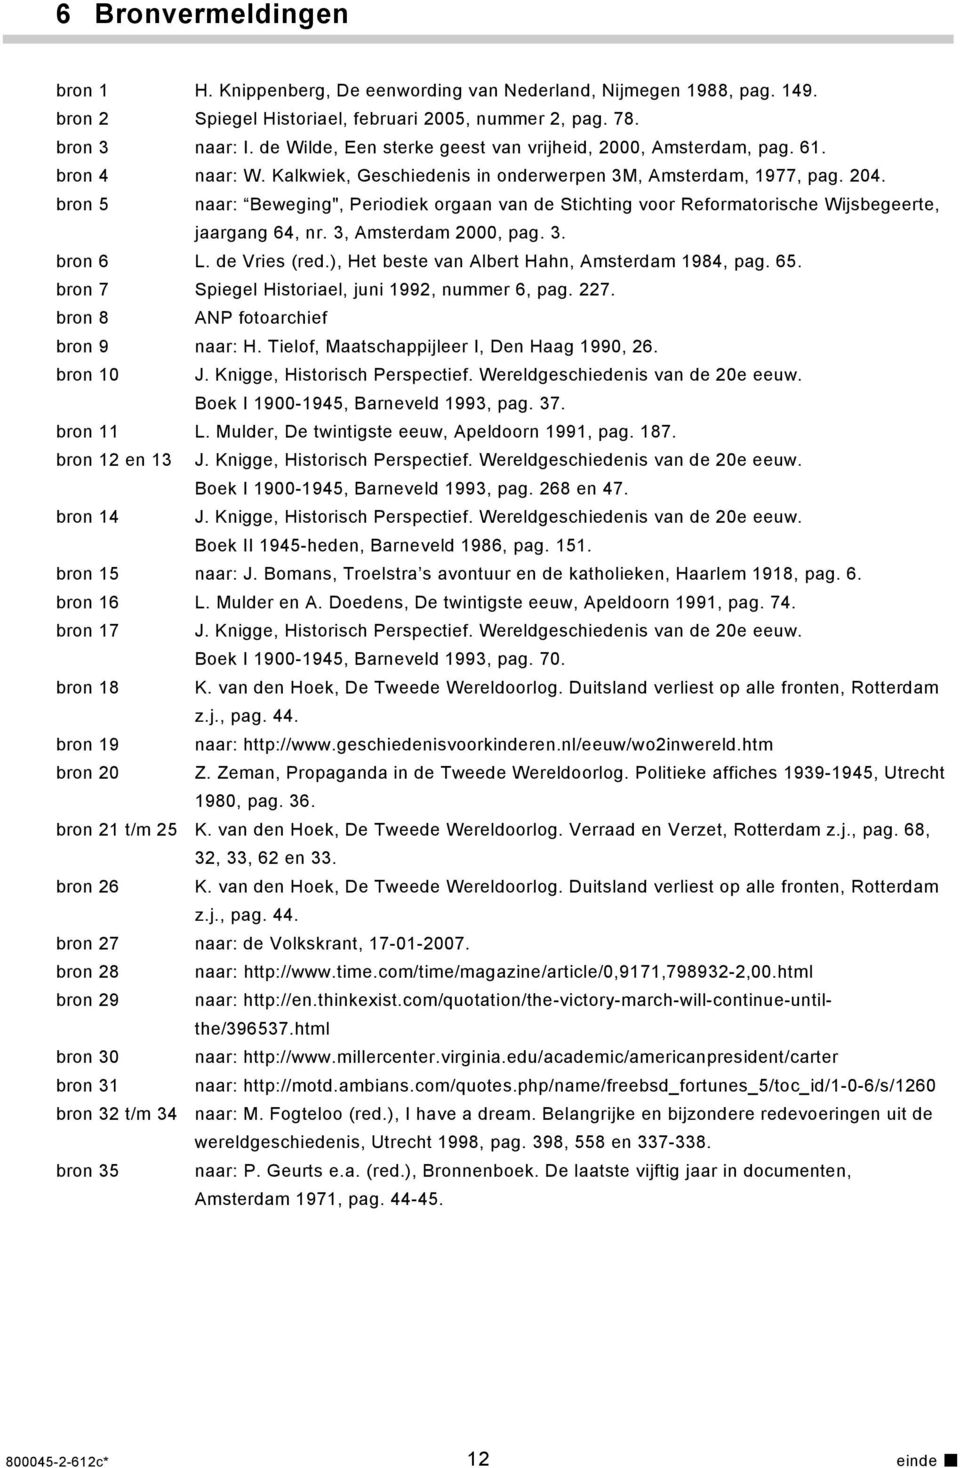 bron 5 naar: Beweging", Periodiek orgaan van de Stichting voor Reformatorische Wijsbegeerte, jaargang 64, nr. 3, Amsterdam 2000, pag. 3. bron 6 L. de Vries (red.